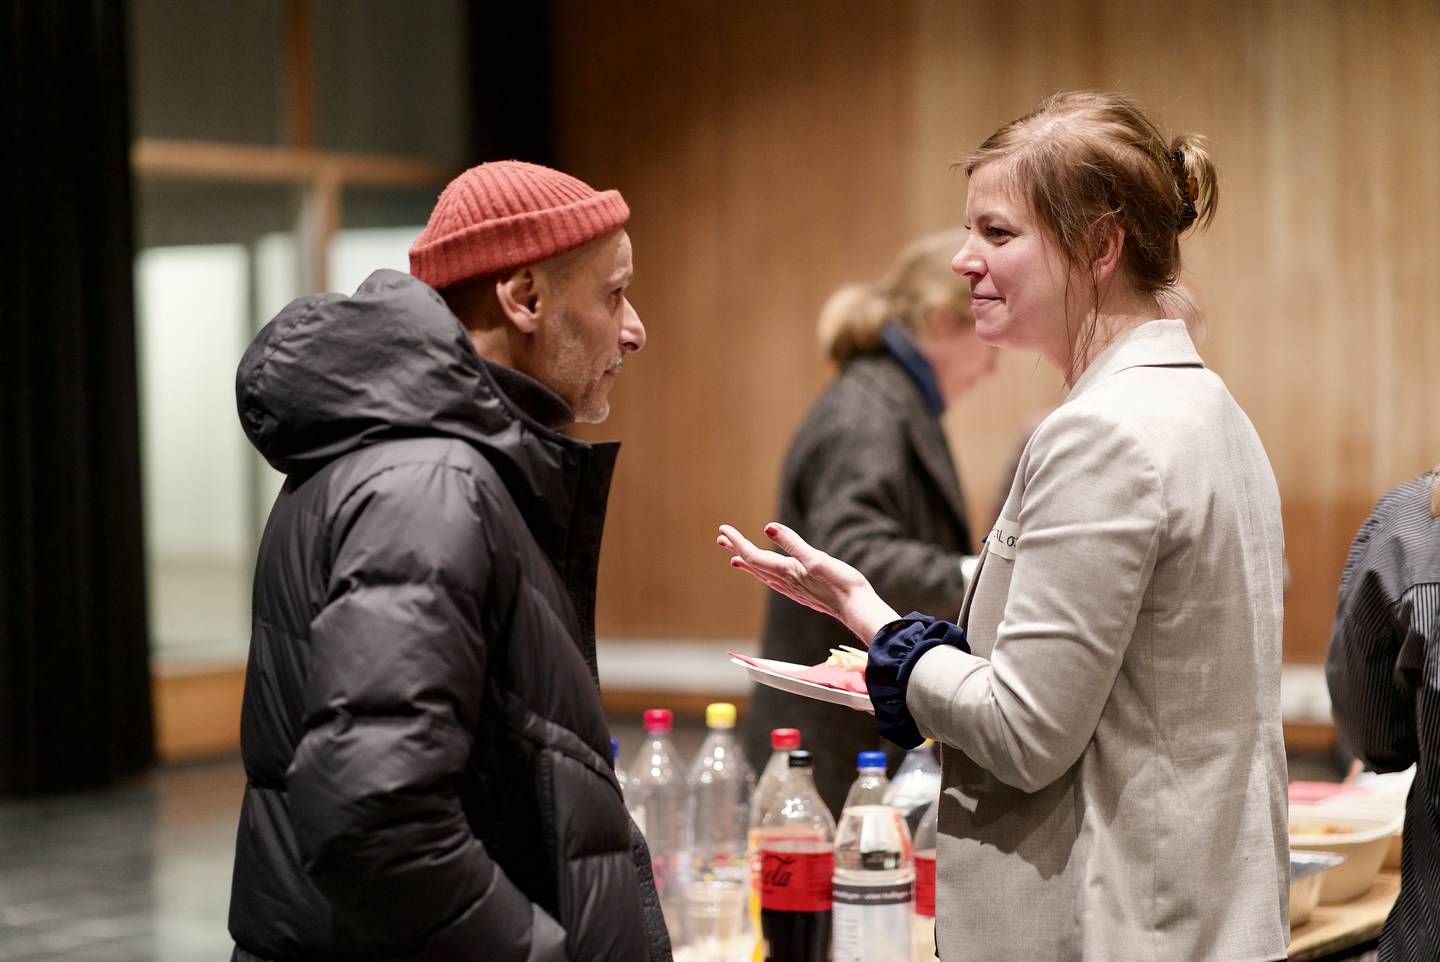 Djamel Selhi og Birgit van der Lans i samtale på Livssynsåpent Hus valentinsdagen